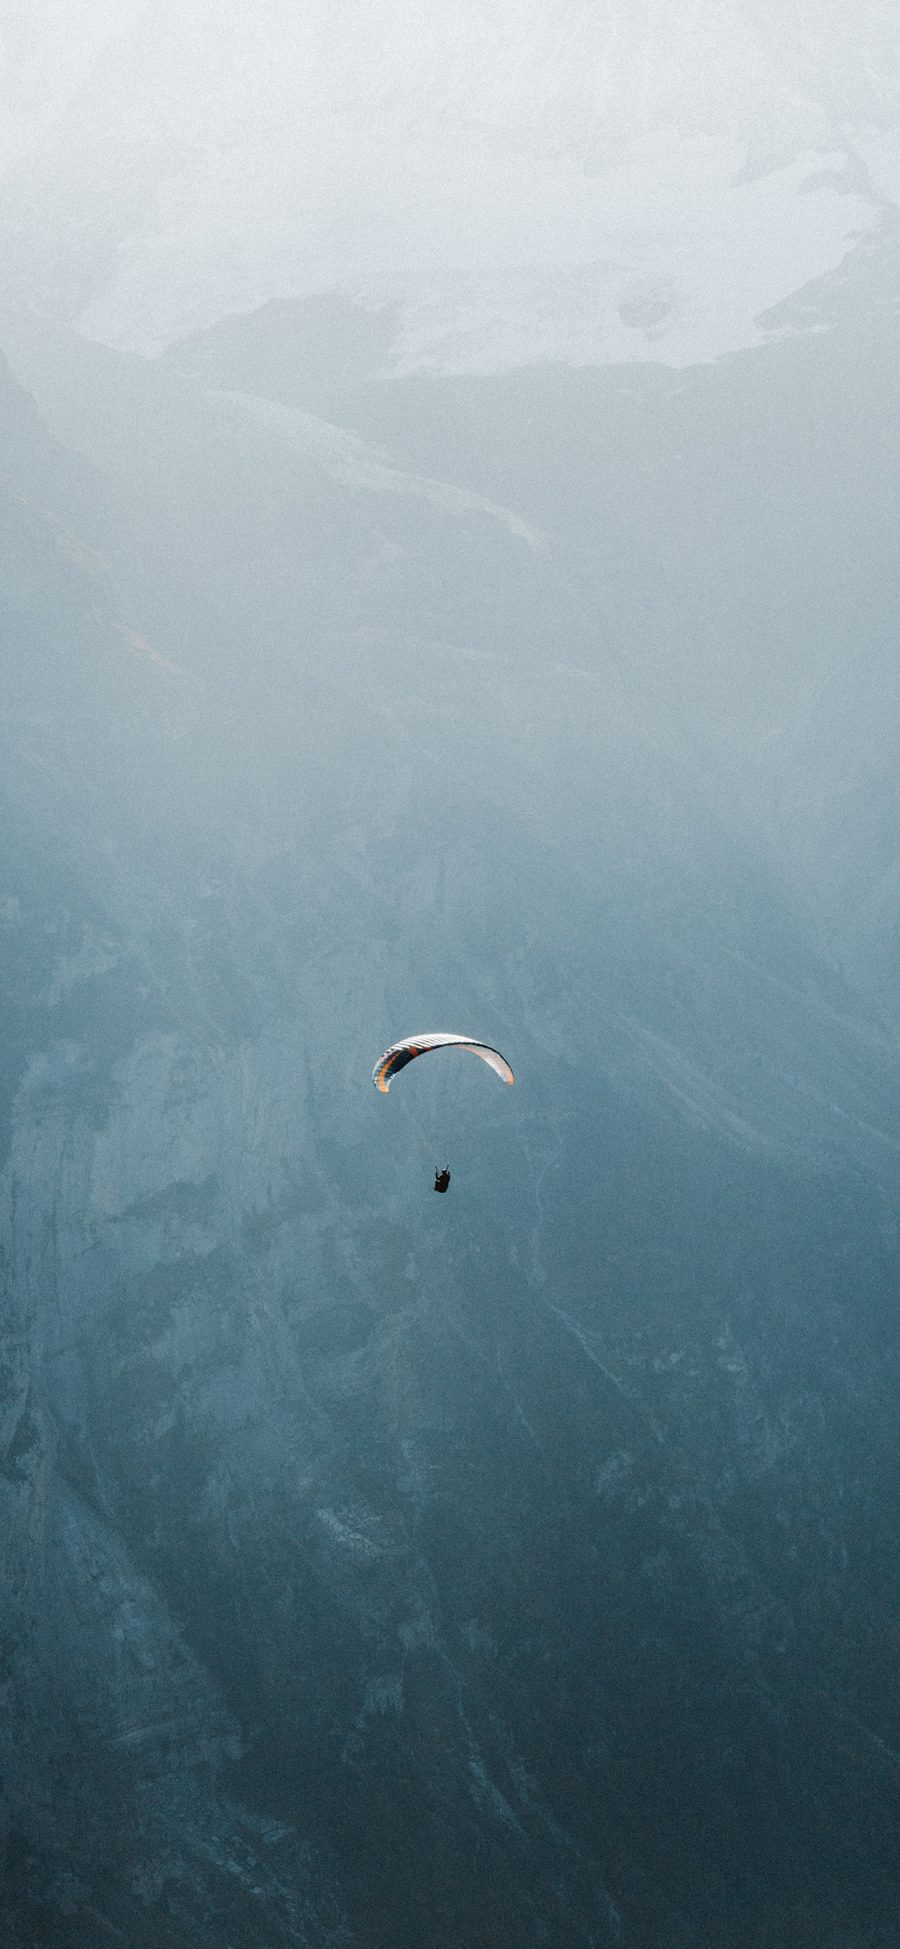 [2436×1125]降落伞 高空 高山 竞技 苹果手机壁纸图片